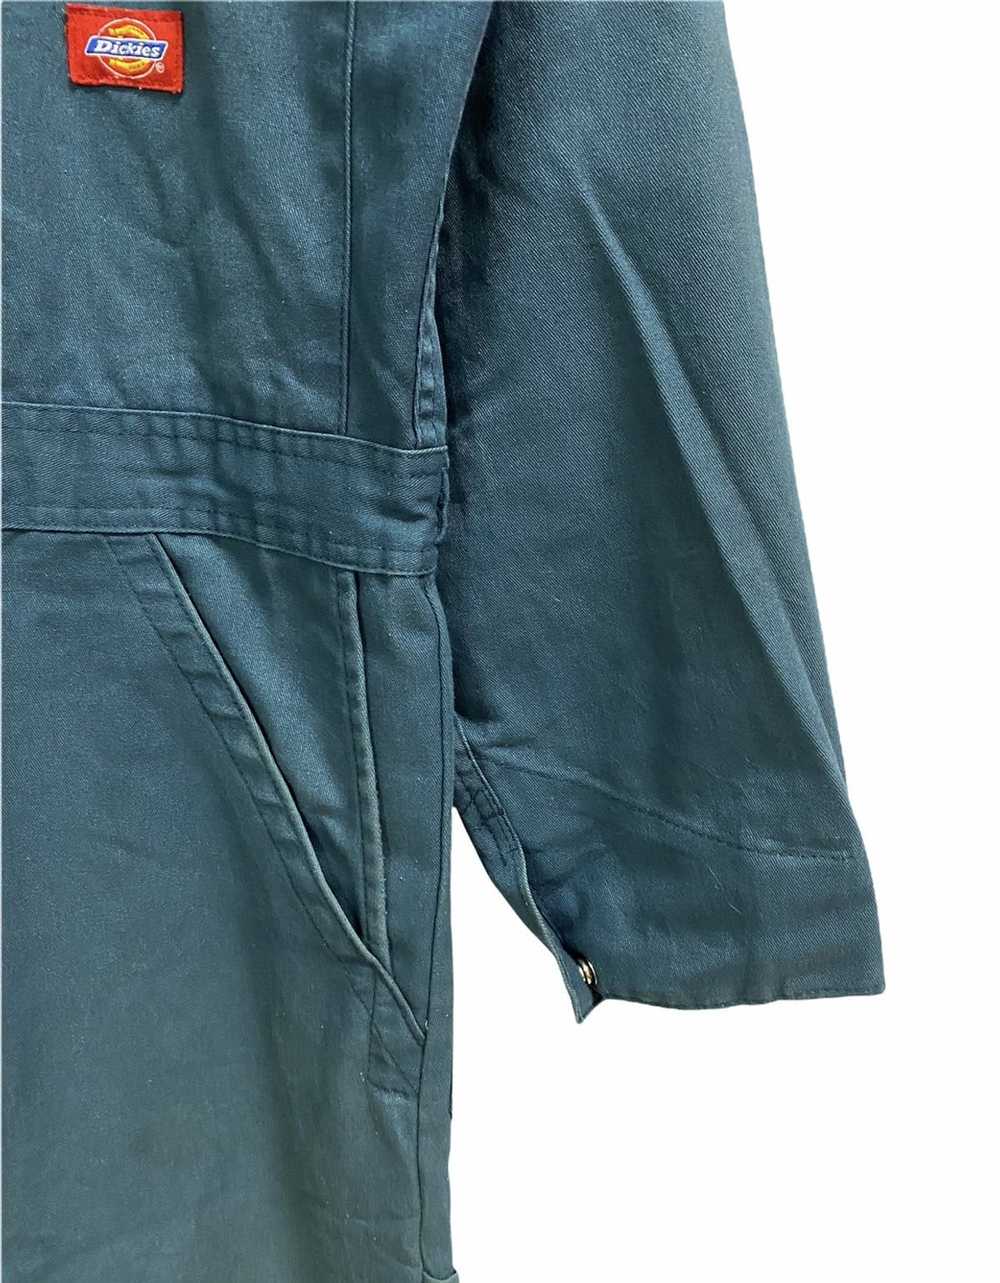 Dickies × Workers Vintage Dickies coverall jacket - image 8